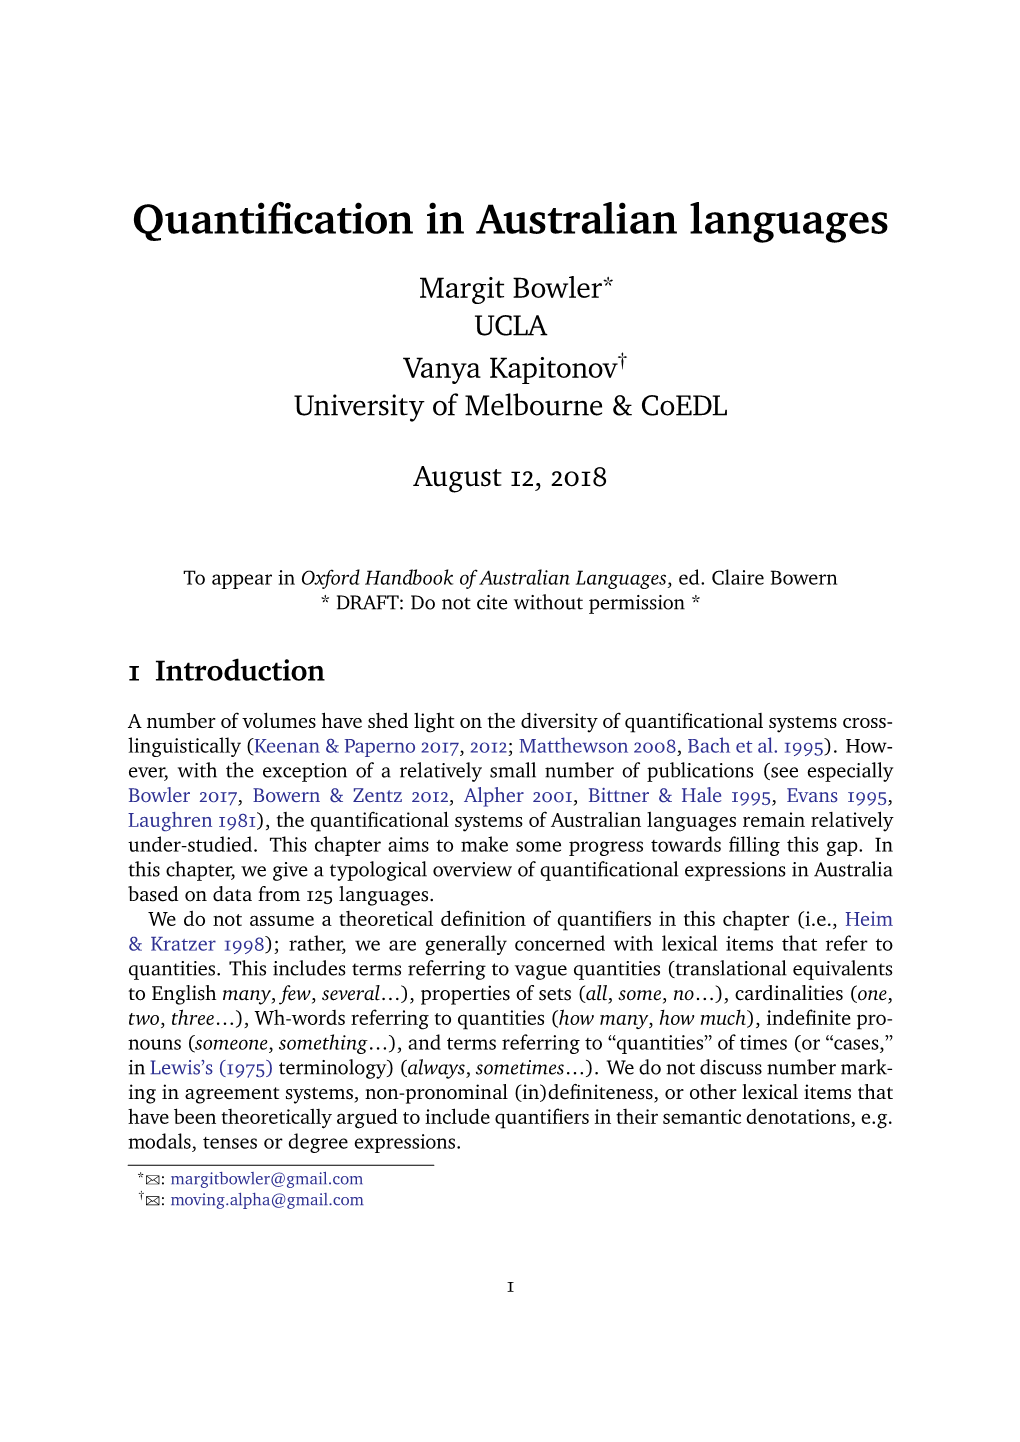 Quantification in Australian Languages